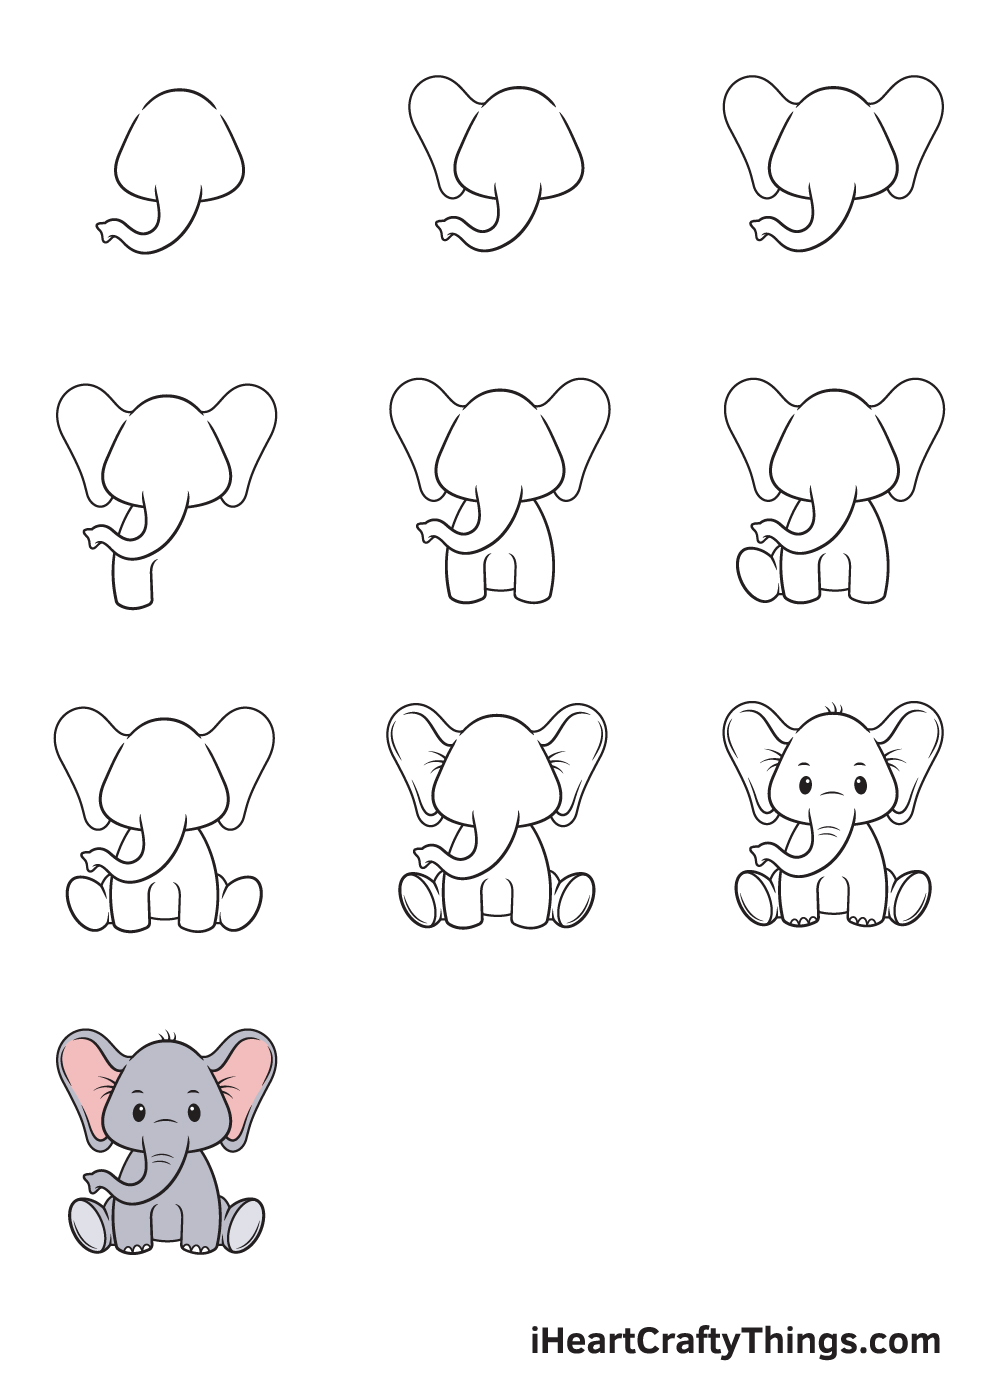 Drawing Elephant in 10 Easy Steps - Hướng dẫn chi tiết cách vẽ con voi đơn giản với 6 bước cơ bản